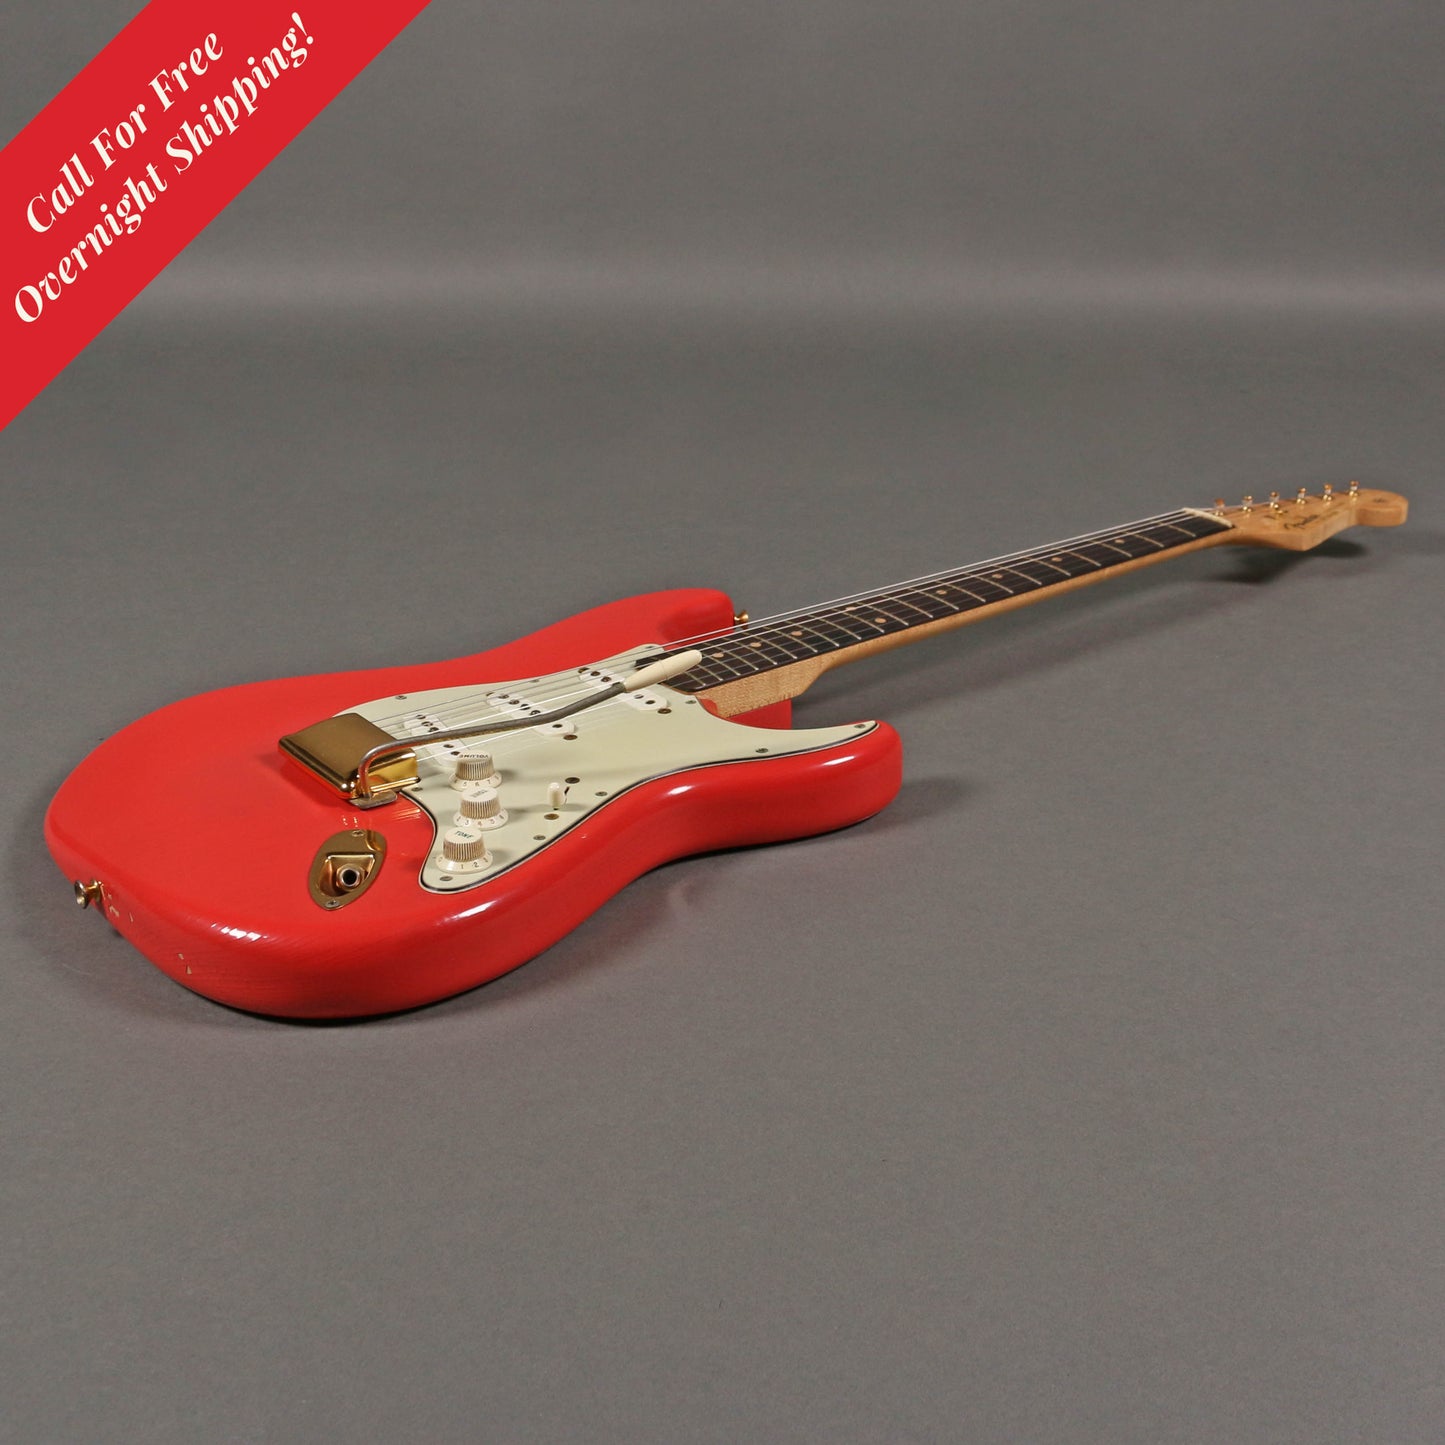 1962 Fender Stratocaster